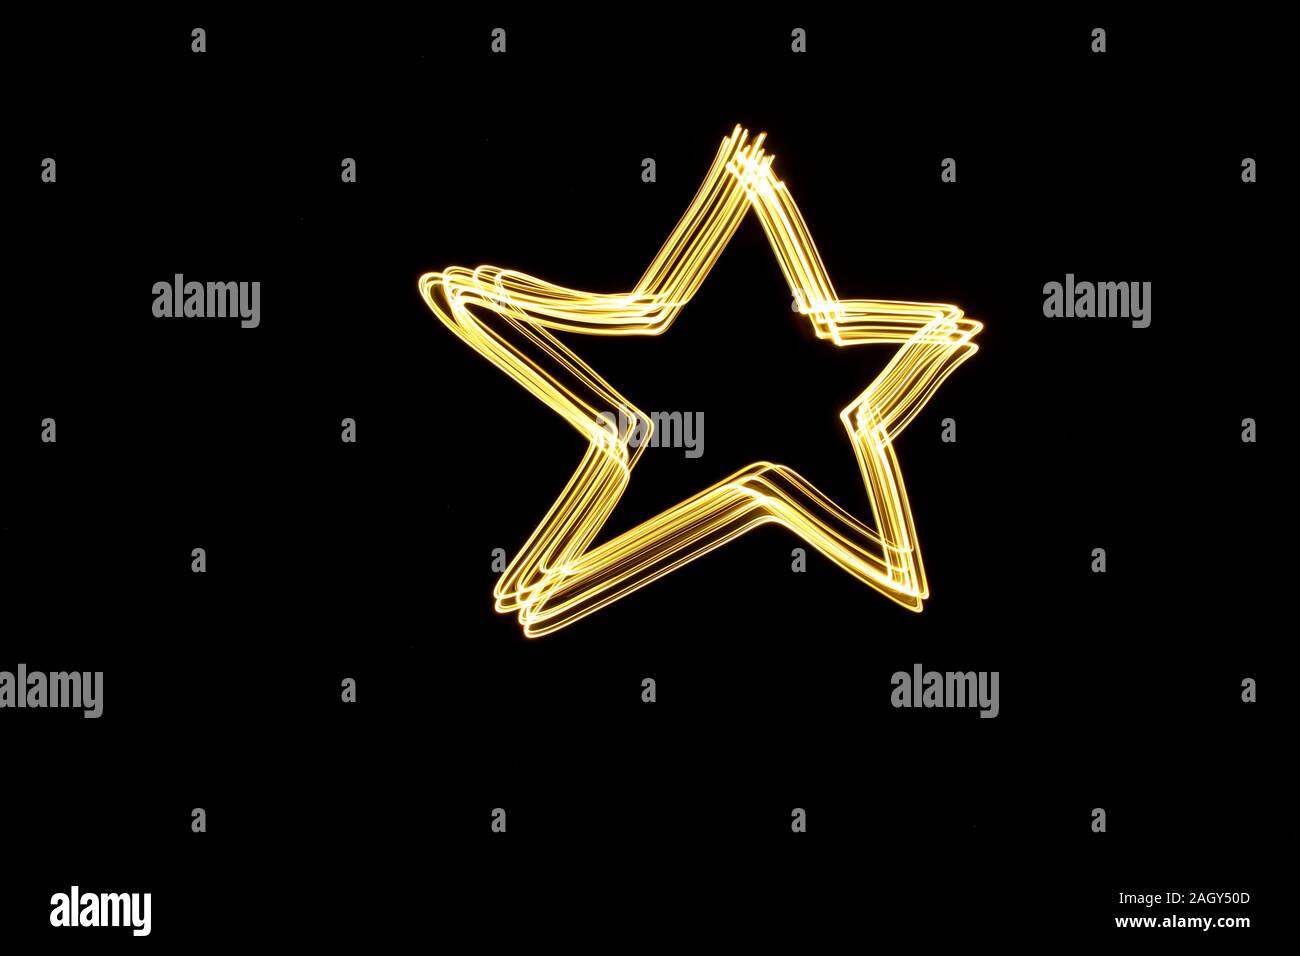 La lumière d'une étoile peinture photographie contours, couleurs néon dynamique dans un modèle abstrait d'un fond noir. Photos à longue exposition. Banque D'Images